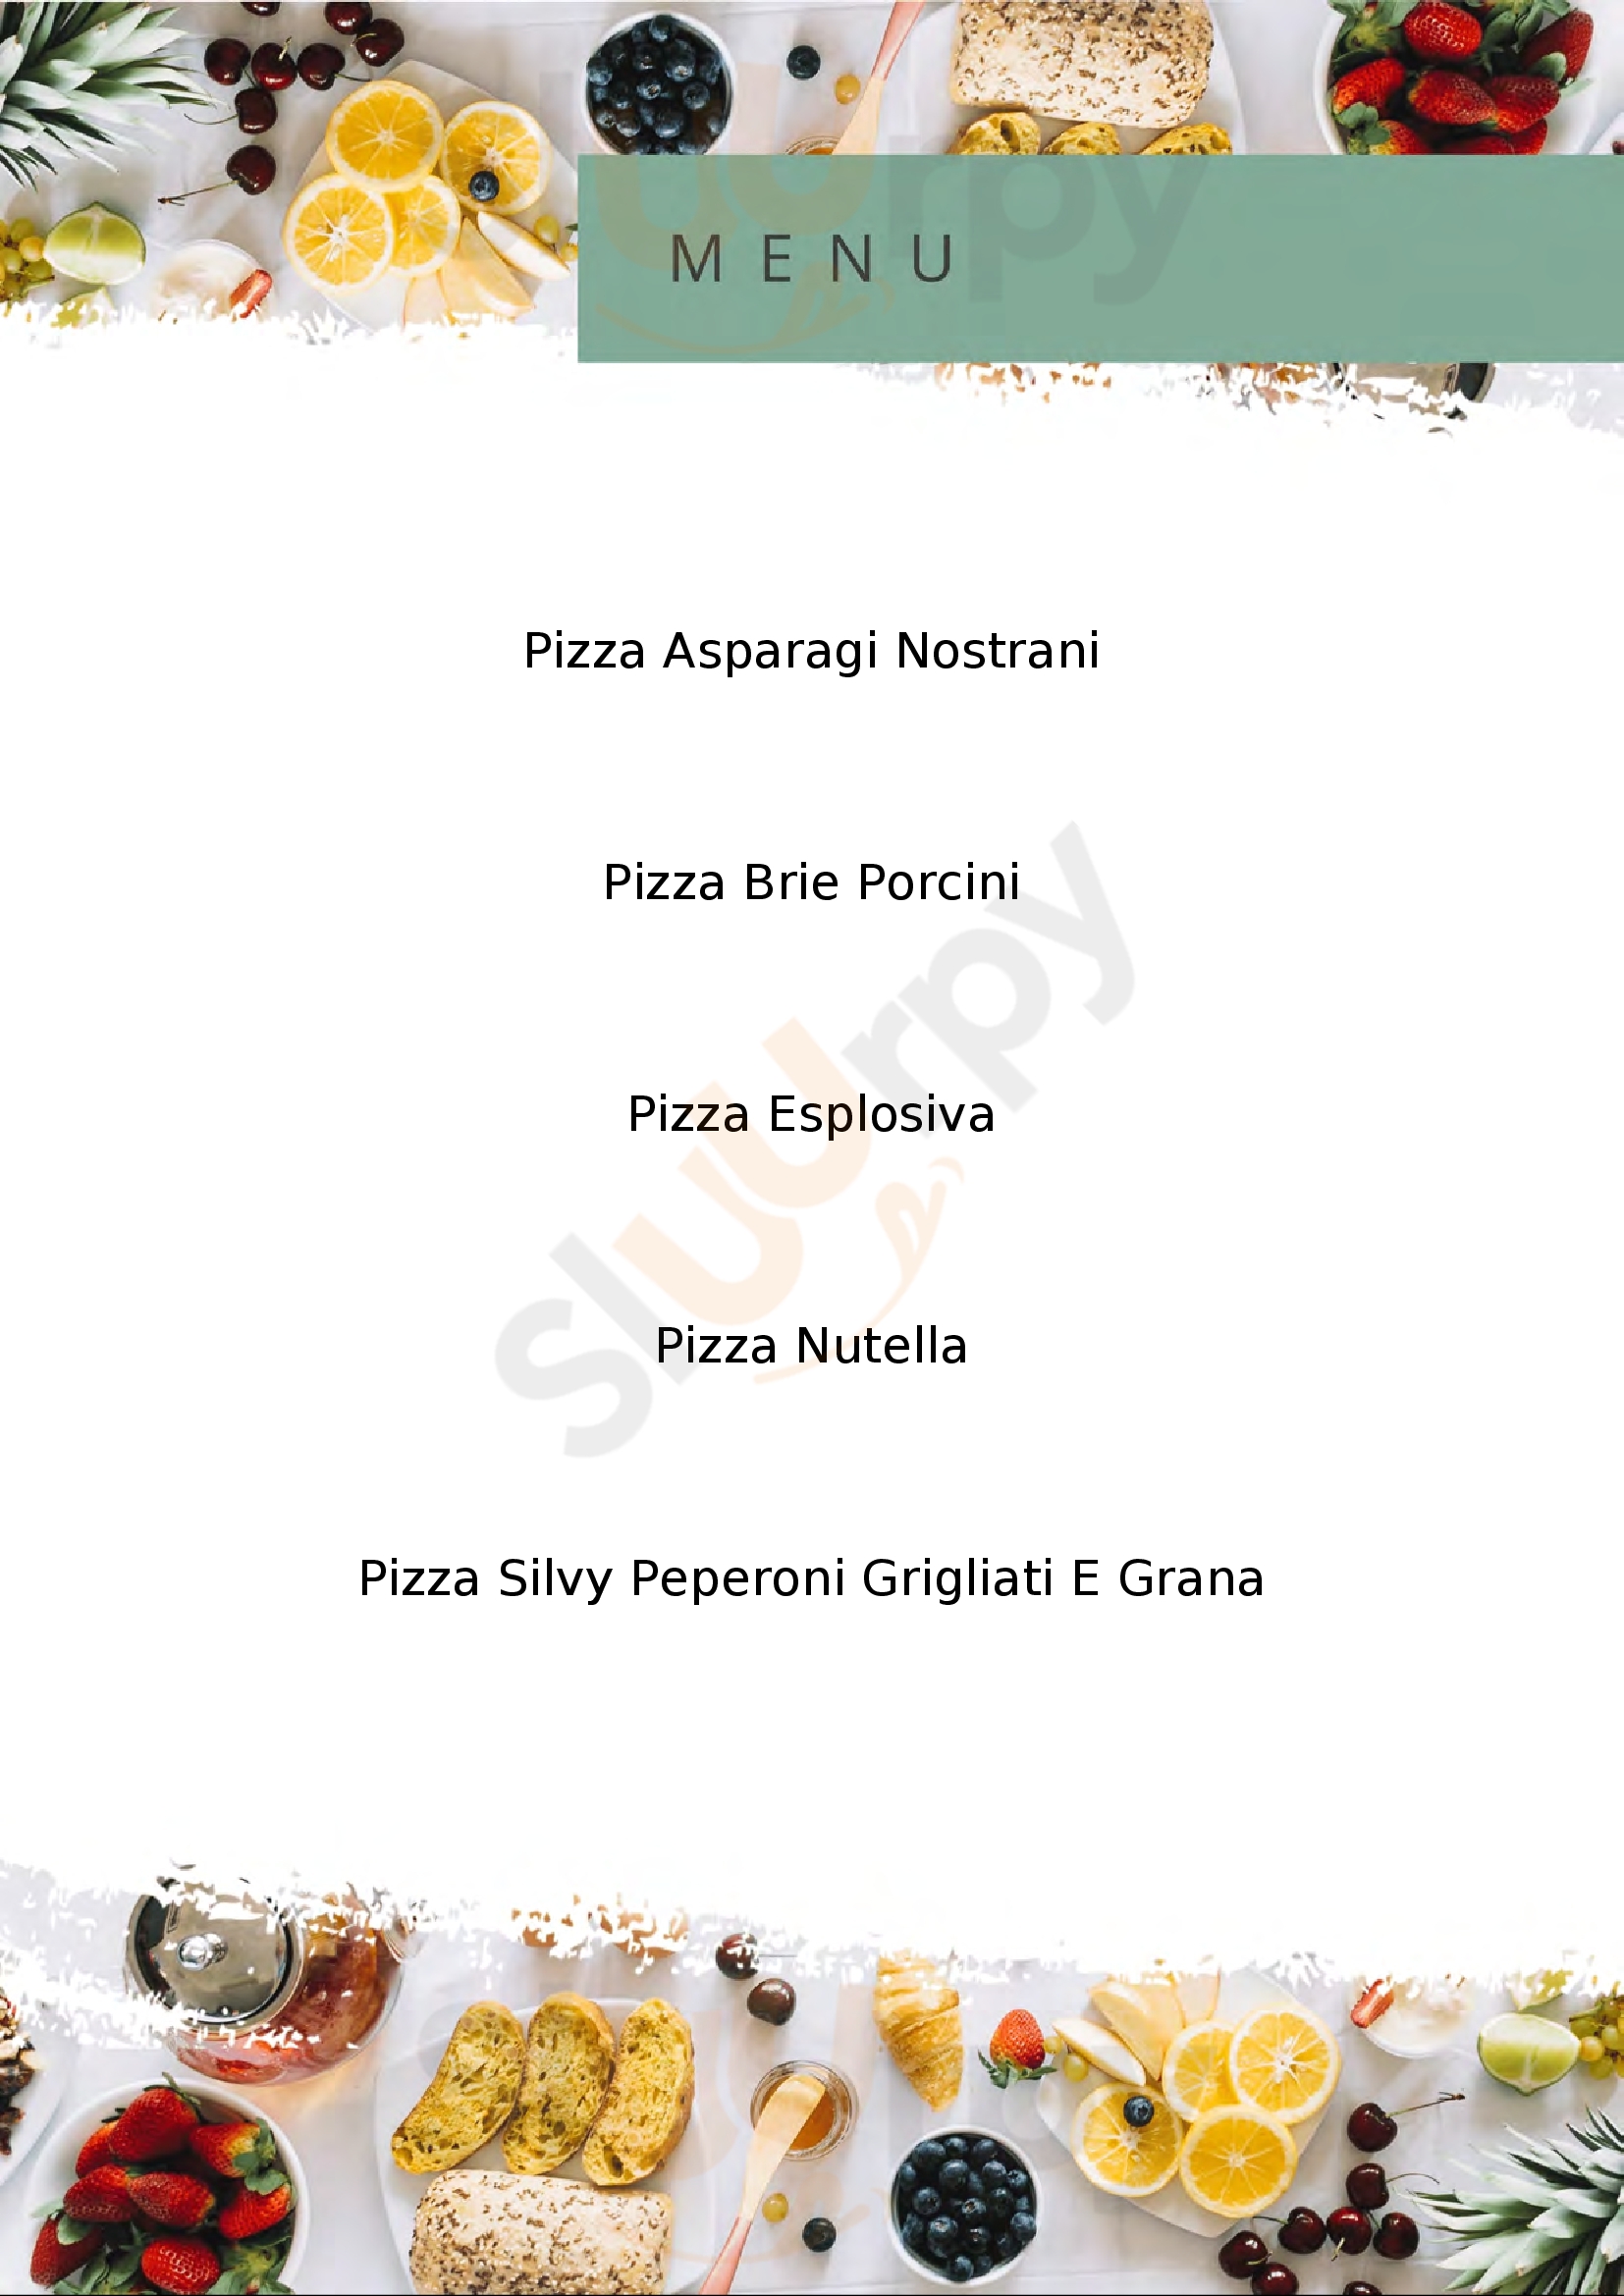 Pizzeria da Adriano Brugnera menù 1 pagina